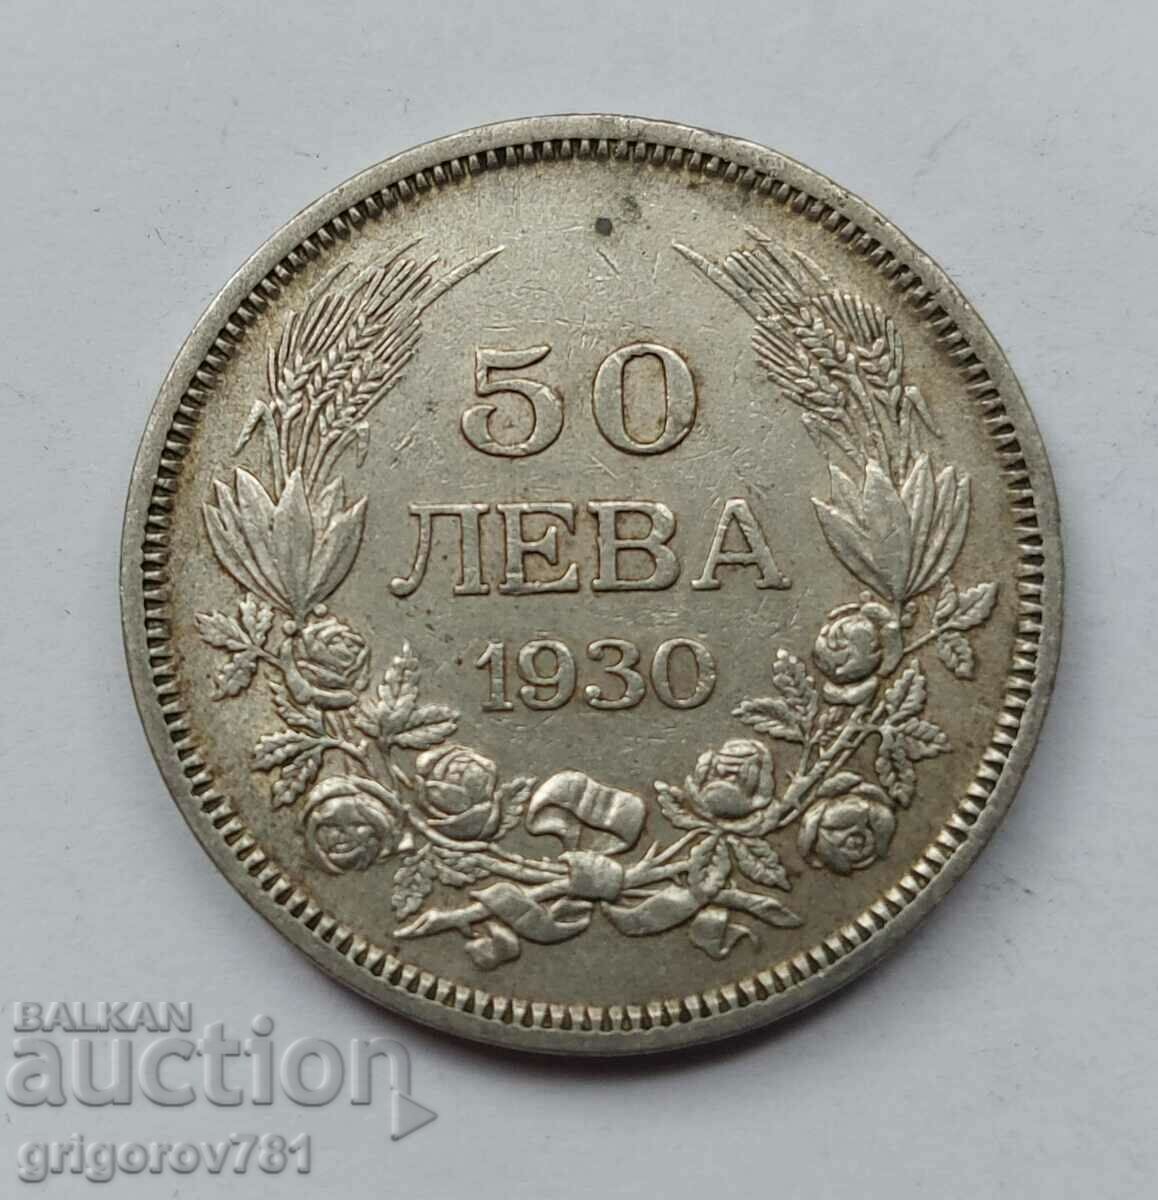 Ασήμι 50 λέβα Βουλγαρία 1930 - ασημένιο νόμισμα #77